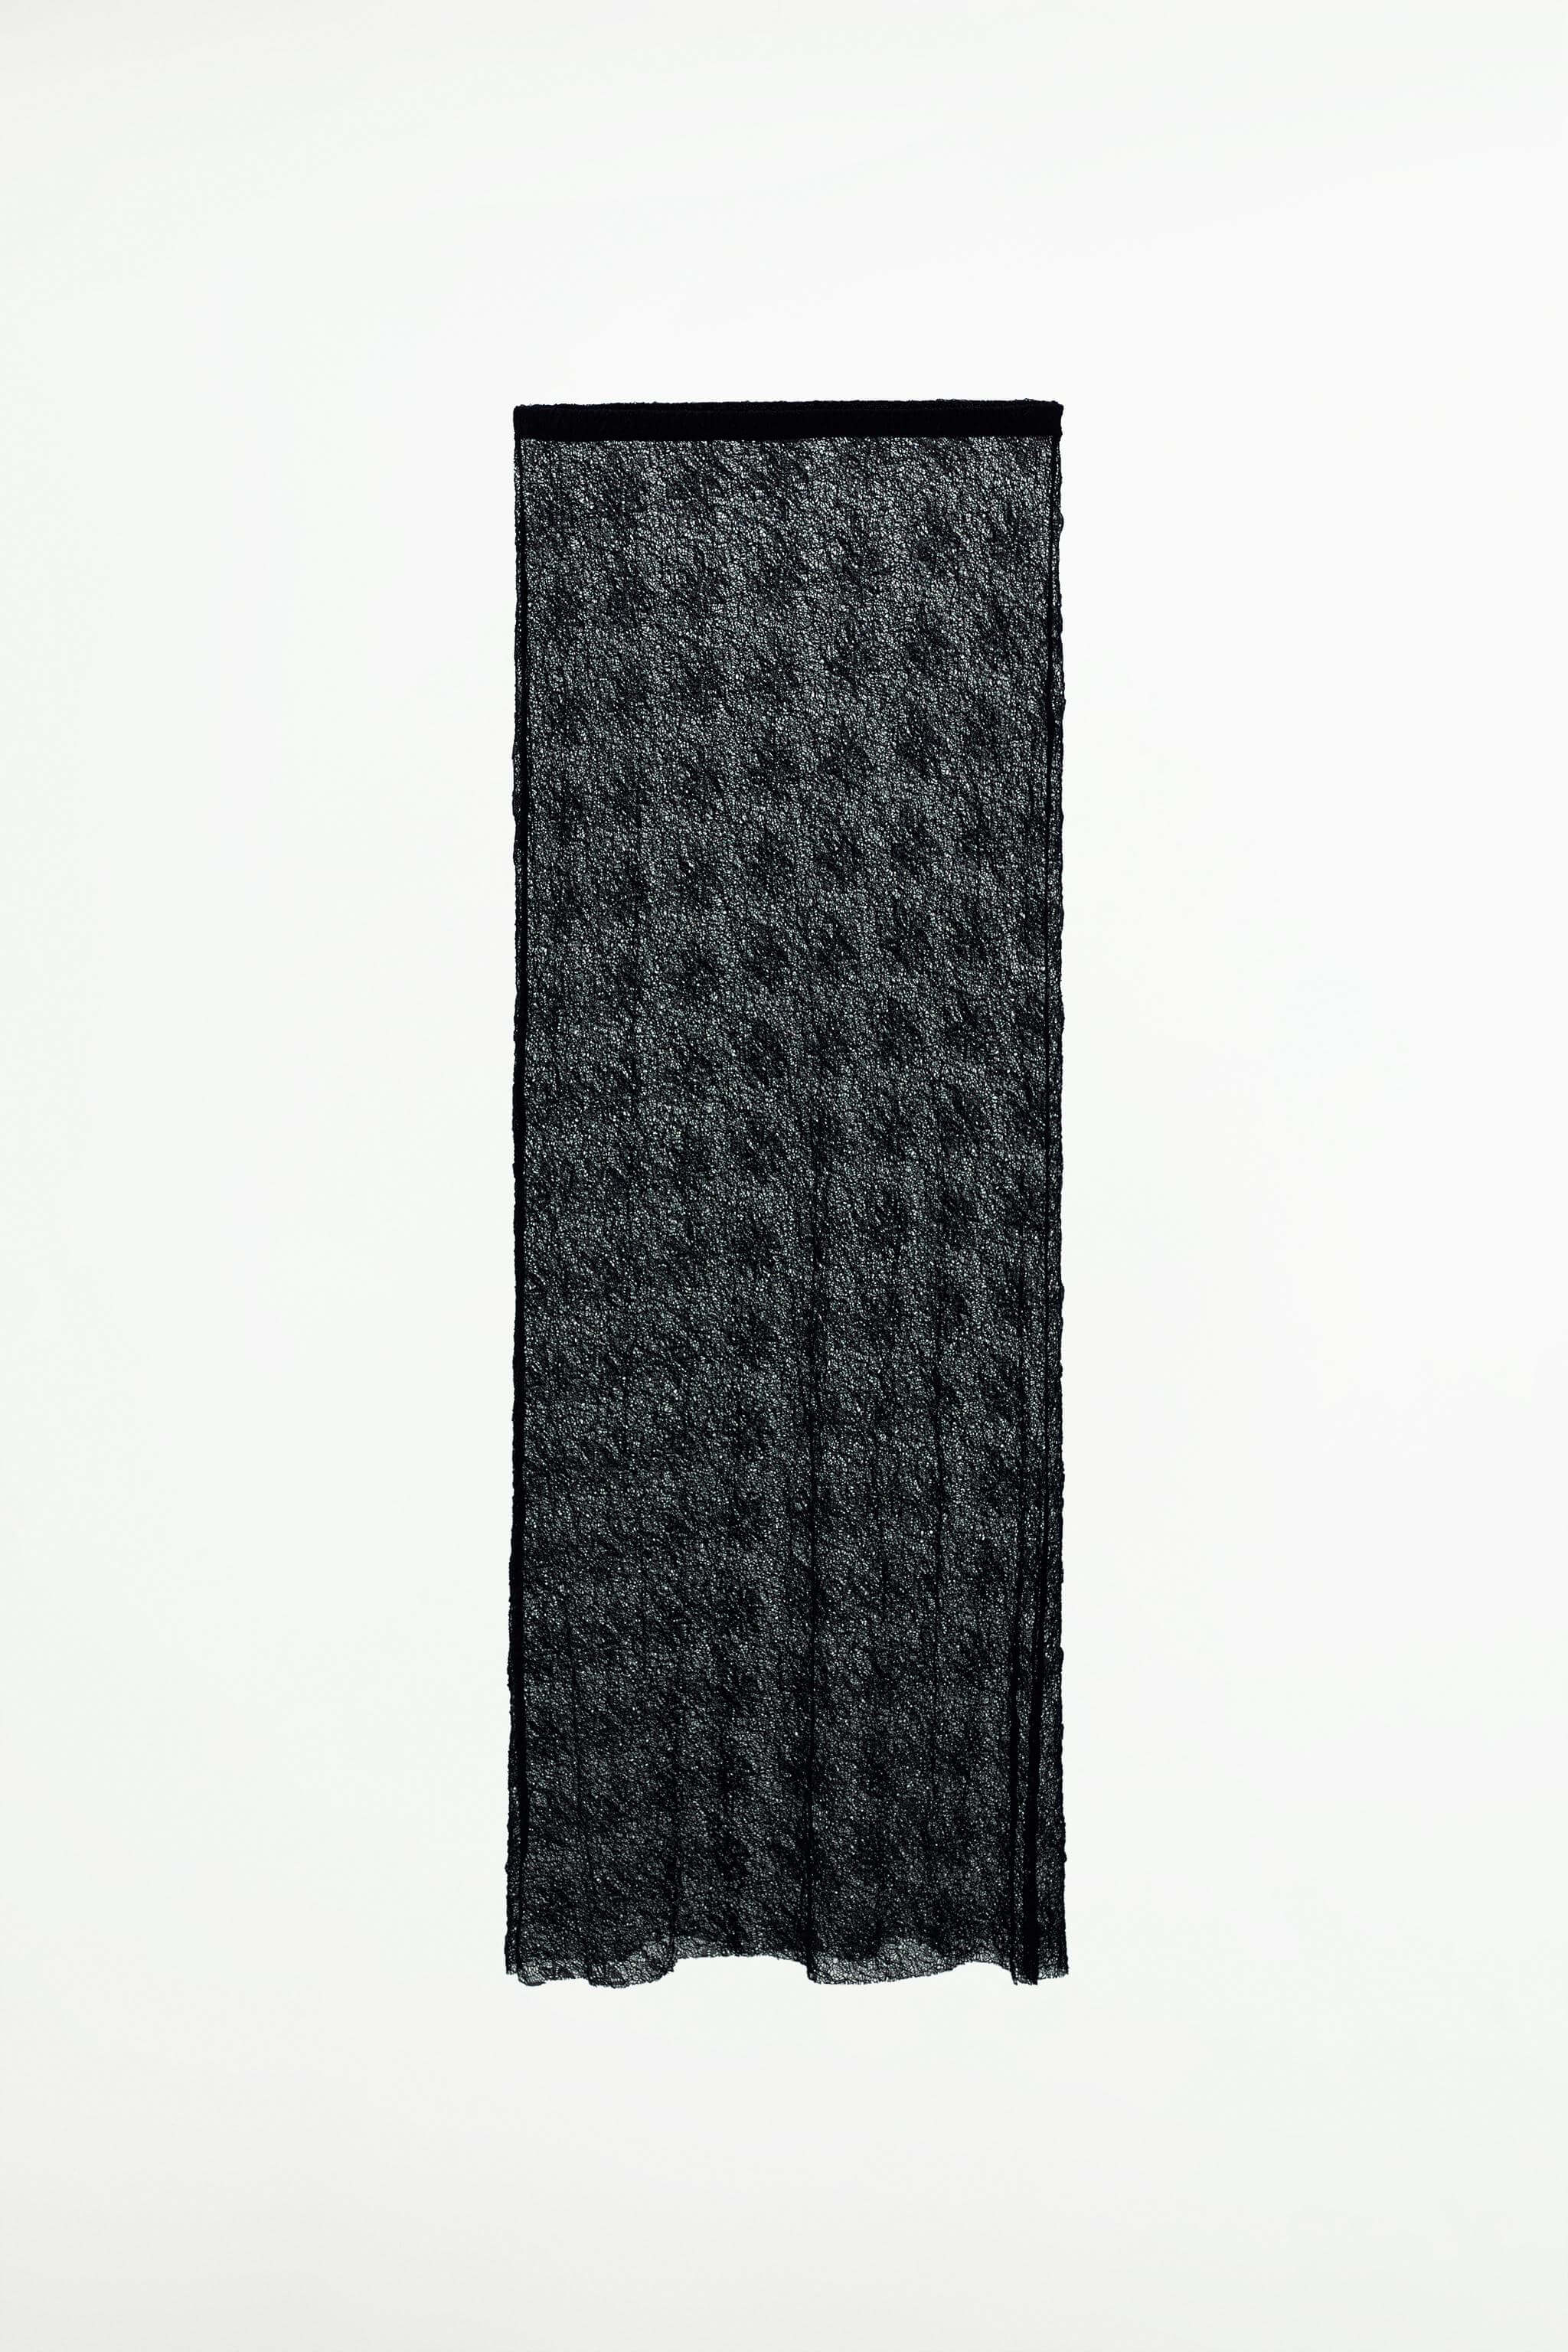 Юбка Zara Lace, черный юбка zara лаконичная 48 размер